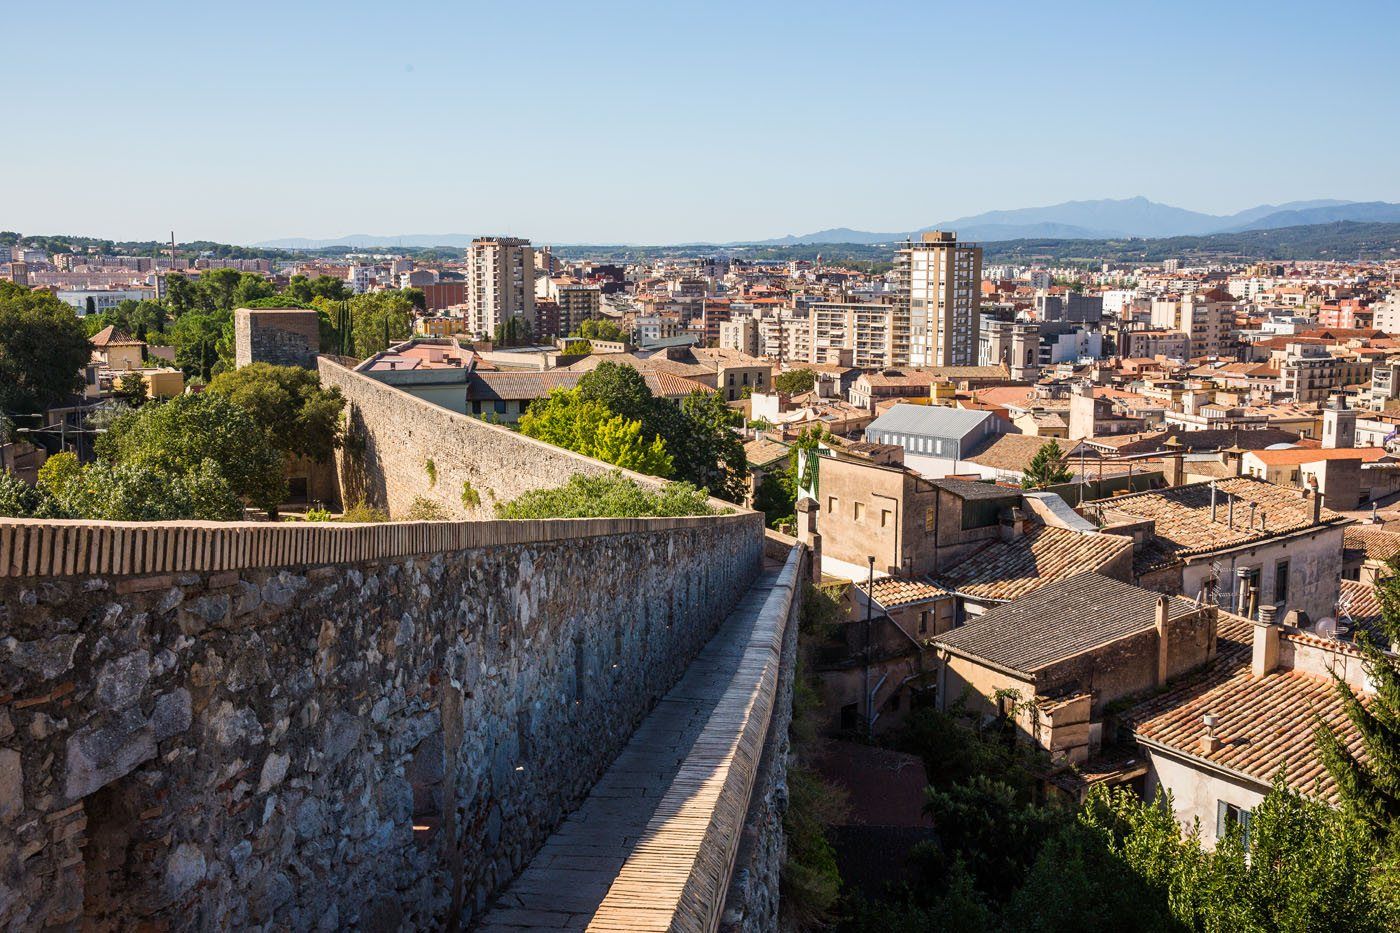 Girona medieval walls